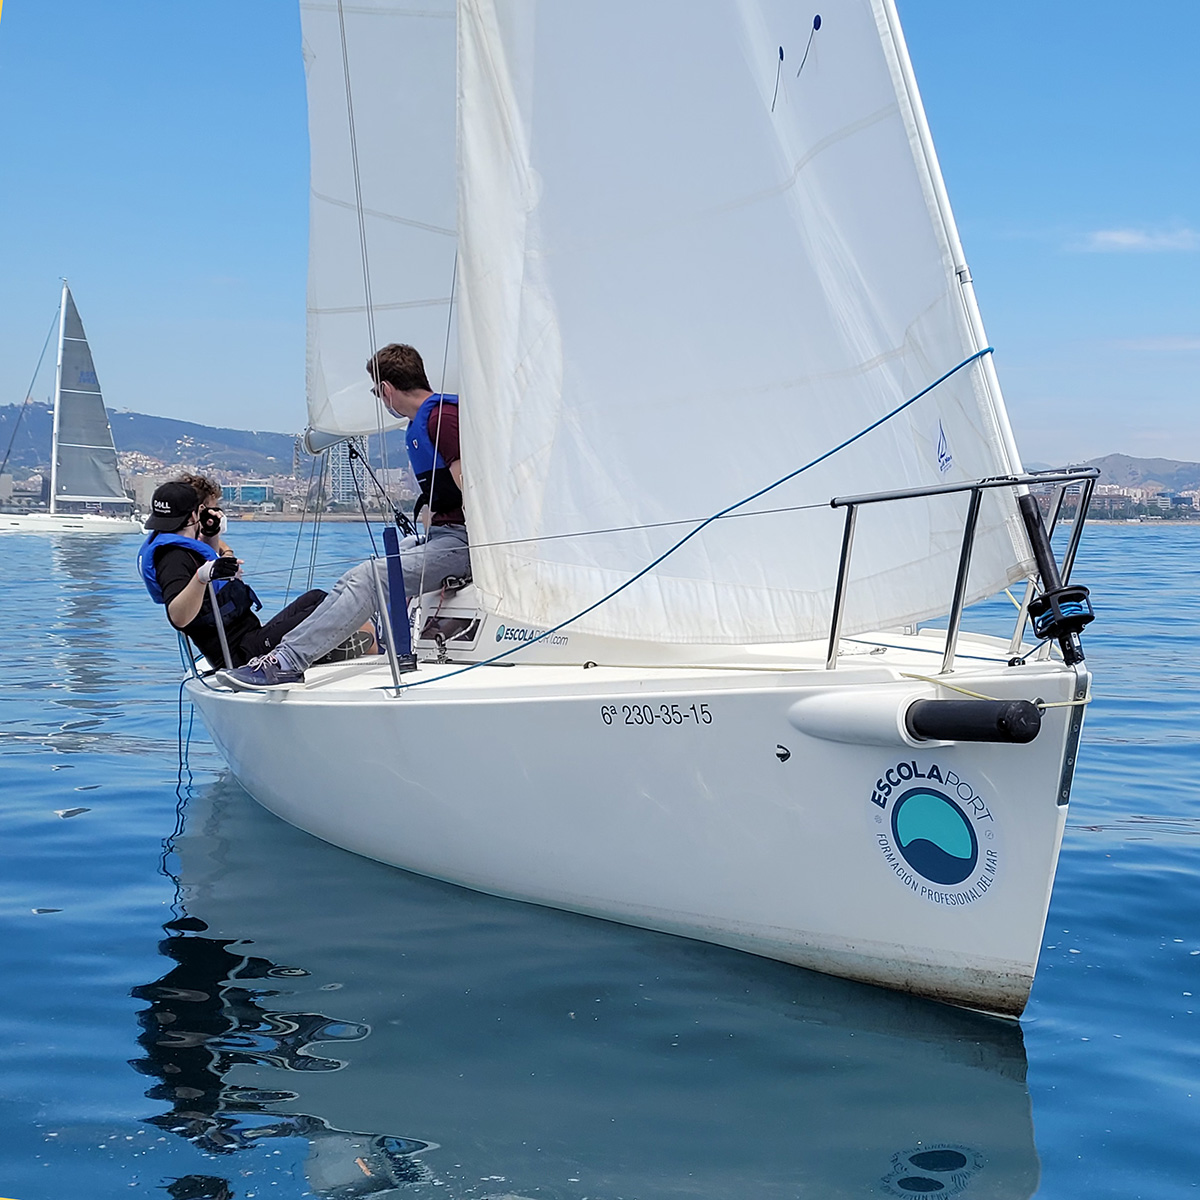 PNB pràctiques de navegació a vela al Port Olímpic de Barcelona - Escola Port